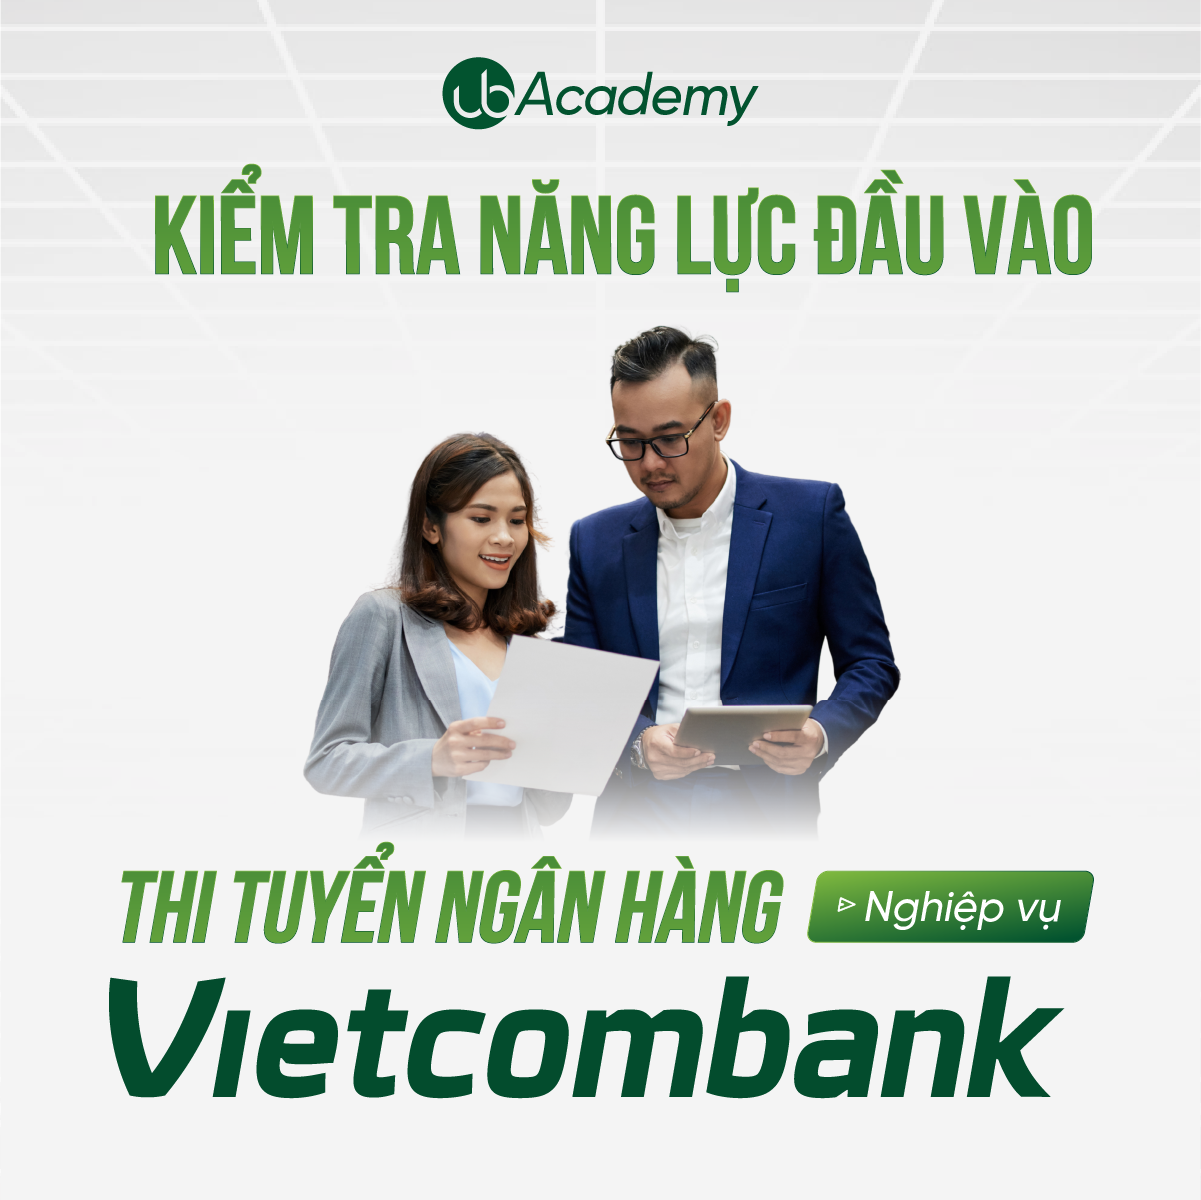 Bài kiểm tra năng lực đầu vào thi tuyển Vietcombank - Nghiệp vụ